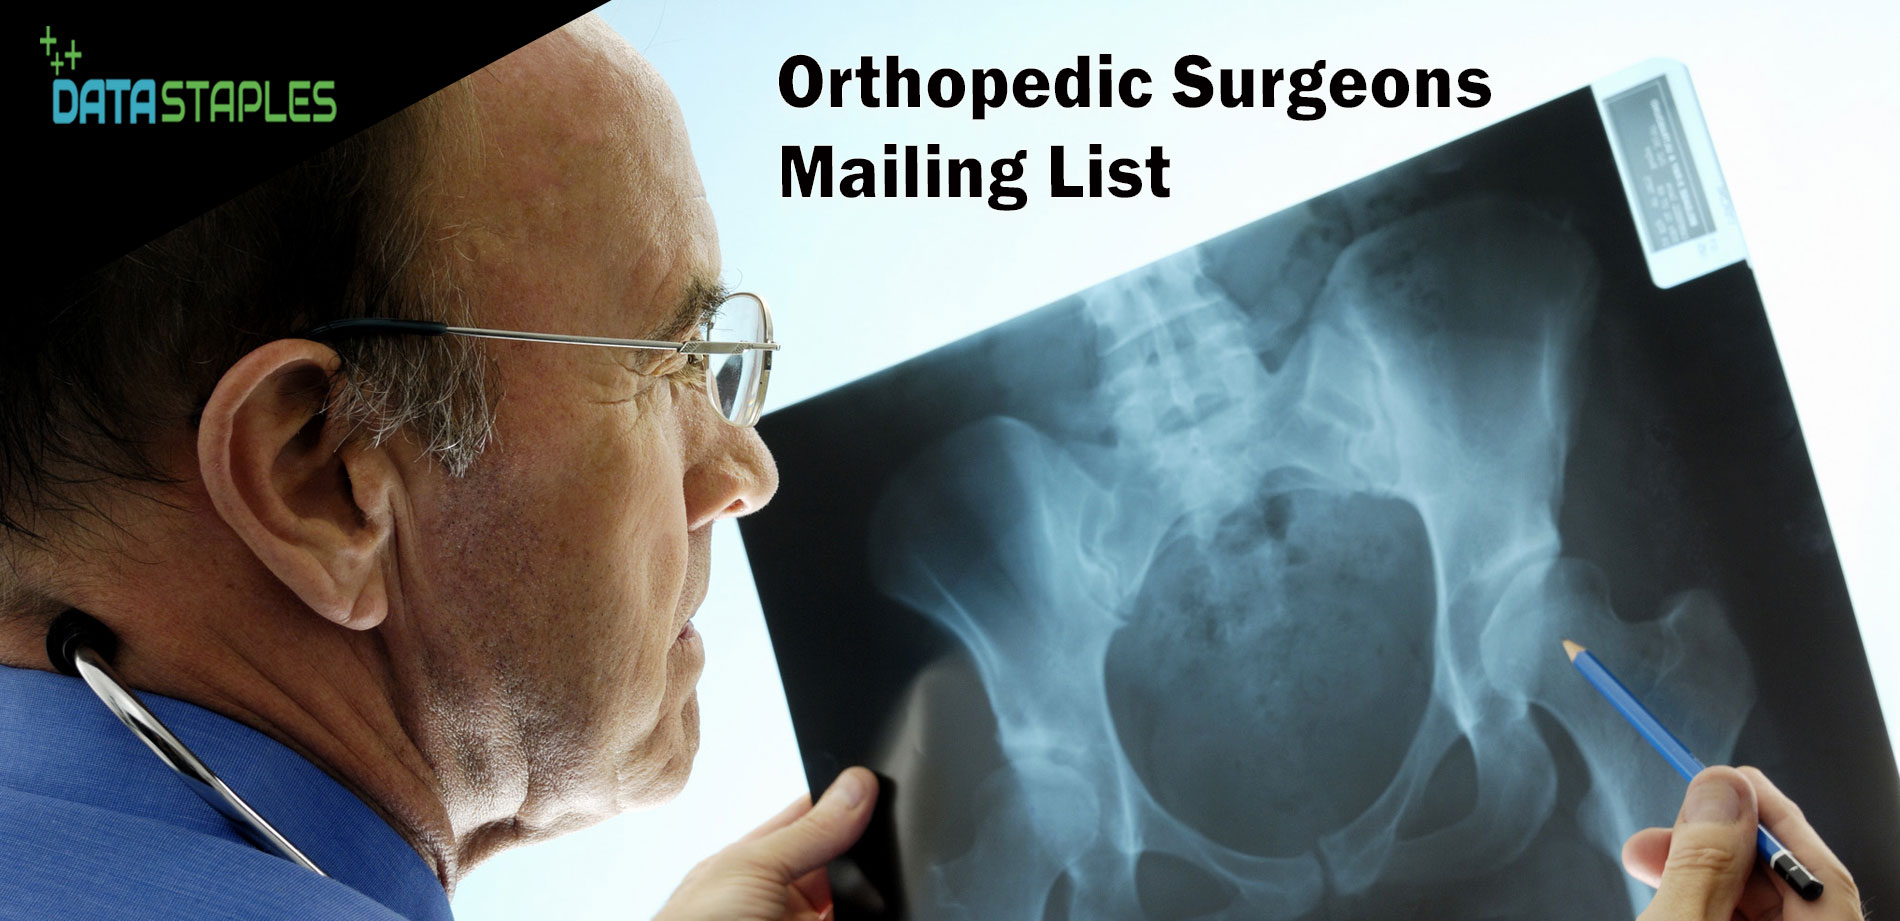 Orthopedic Surgeons Mailing List | DataStaples